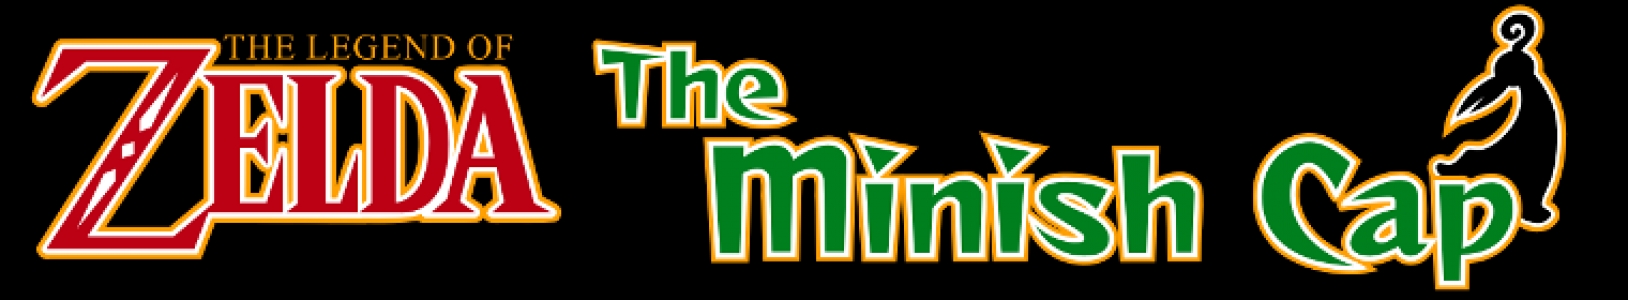 The Legend of Zelda The Minish Cap banner